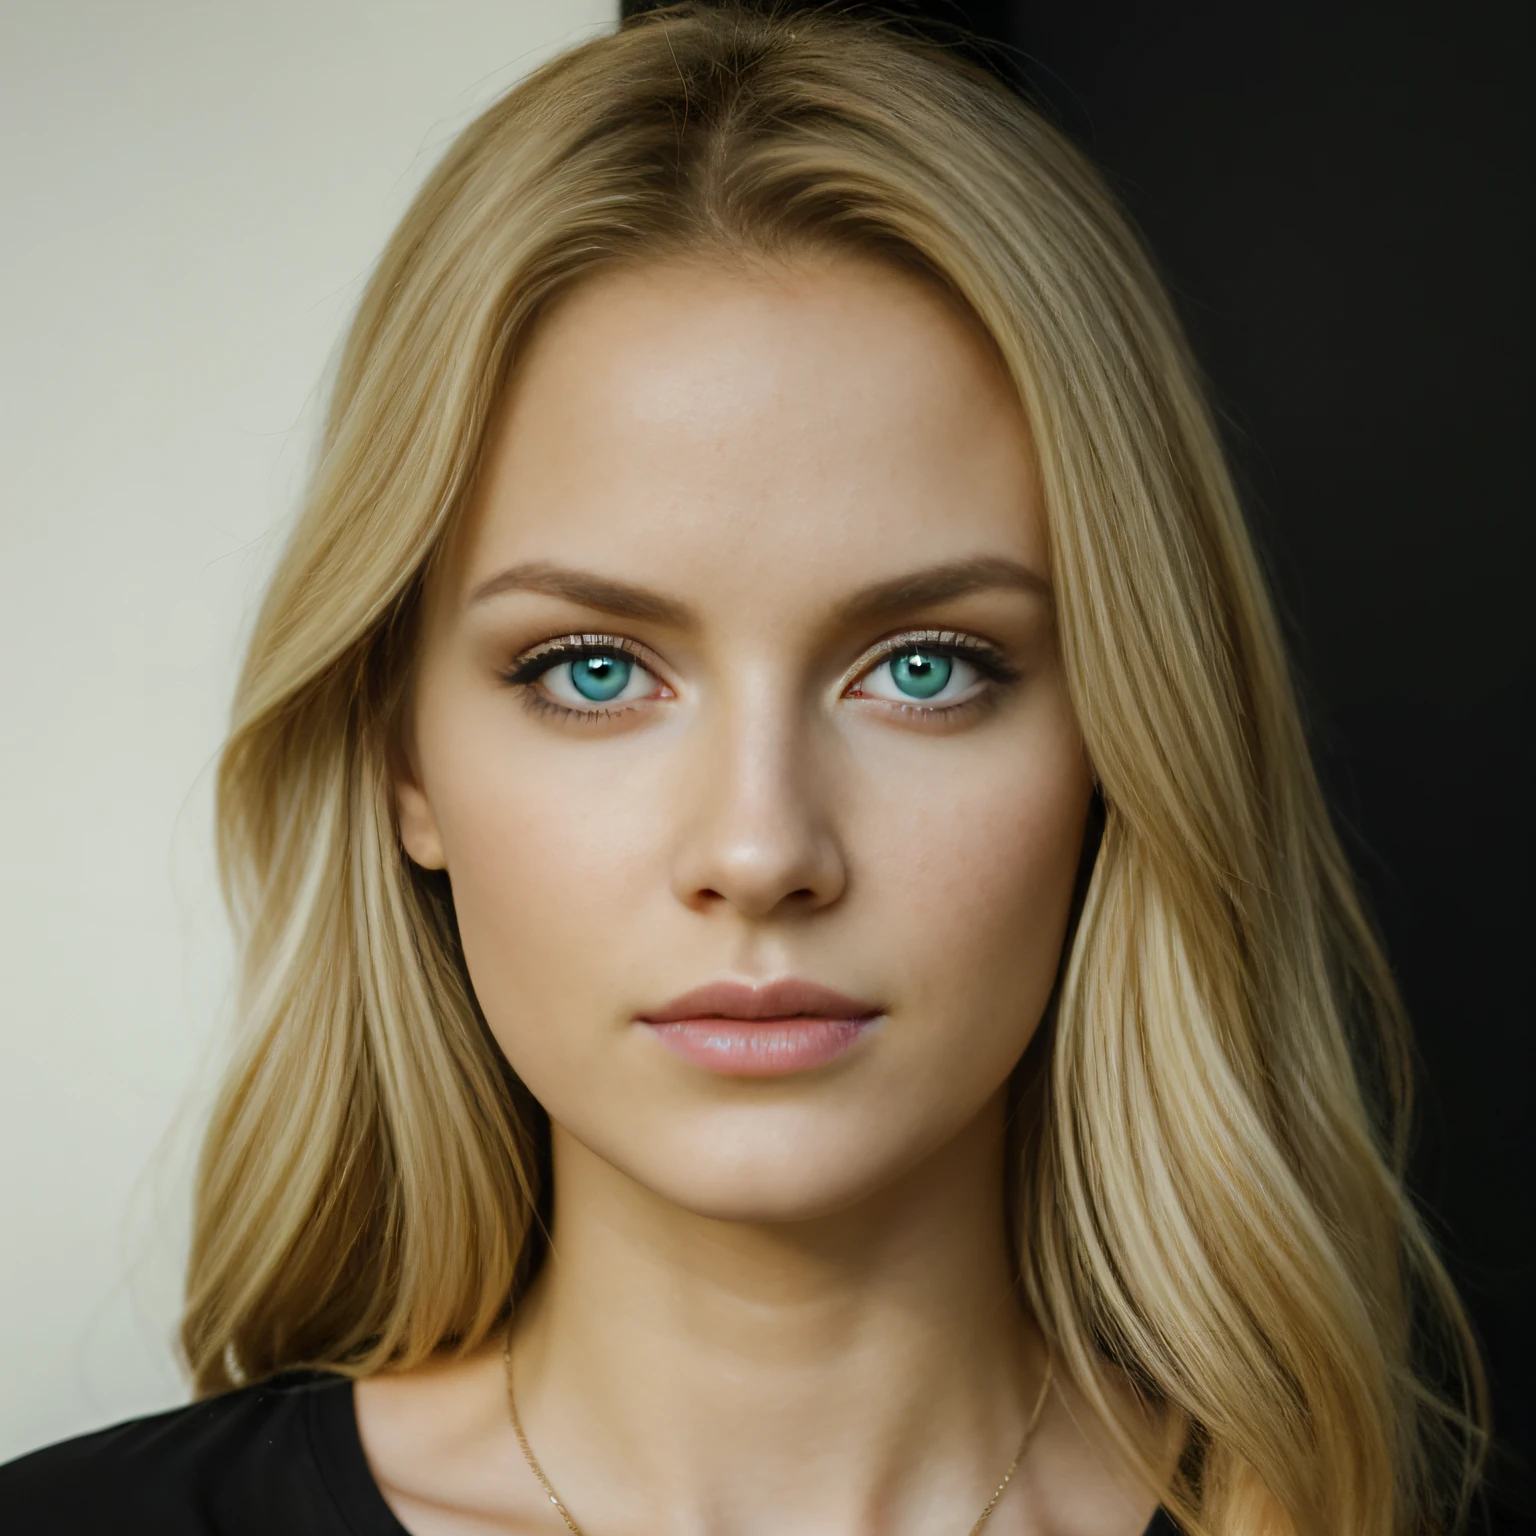 Realista loira clara linda camisa preta com decote em V sexy mulheres, olhos verdes azuis, retrato fotográfico